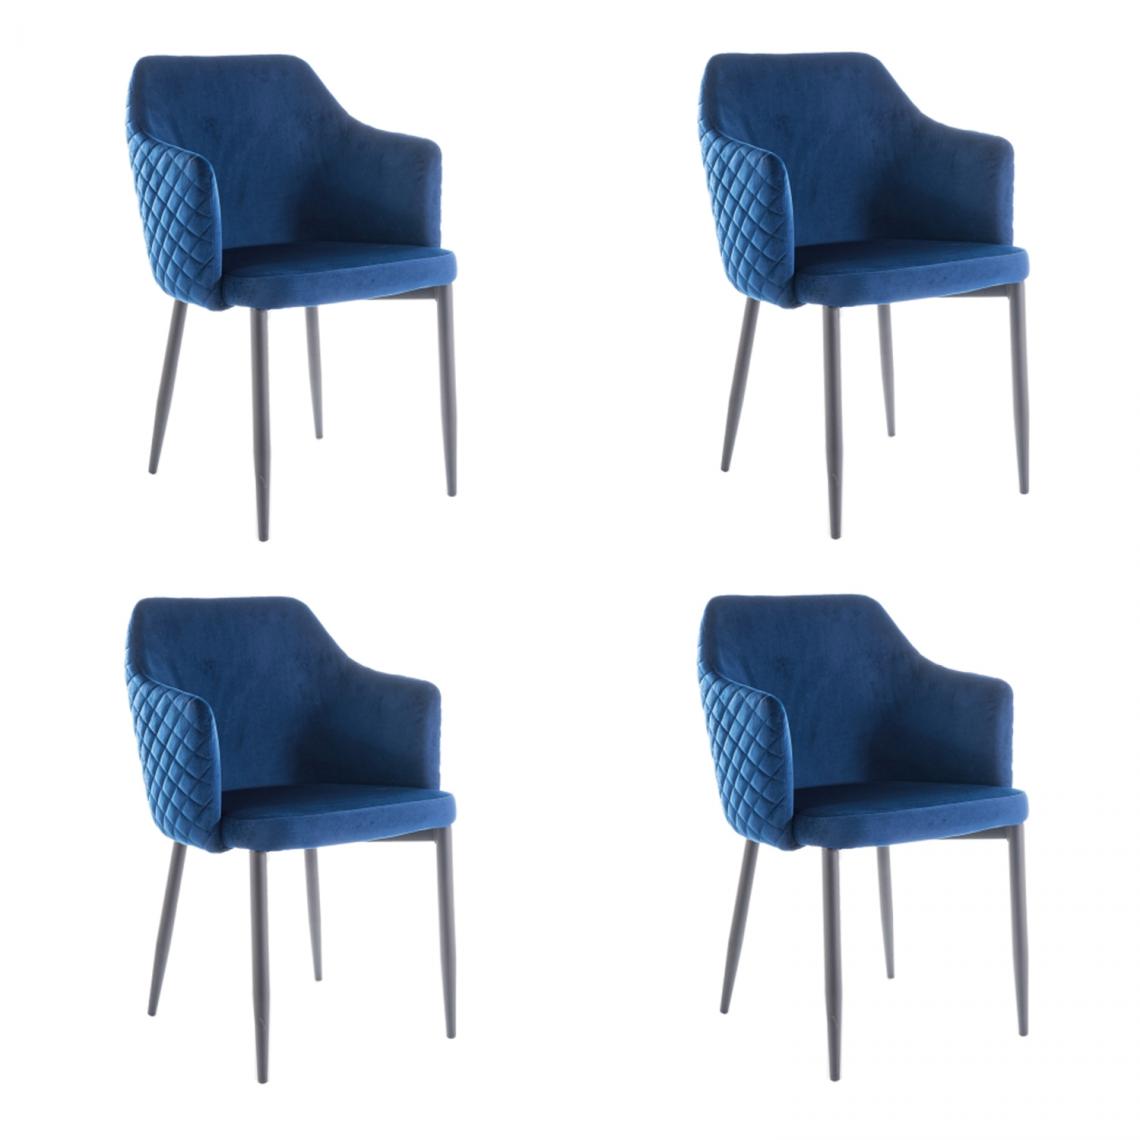 Hucoco - ASTOP - Lot de 4 chaise style glamour - 84x46x46 cm - Revêtement en tissu velouté - Chaise élégante - Bleu - Chaises